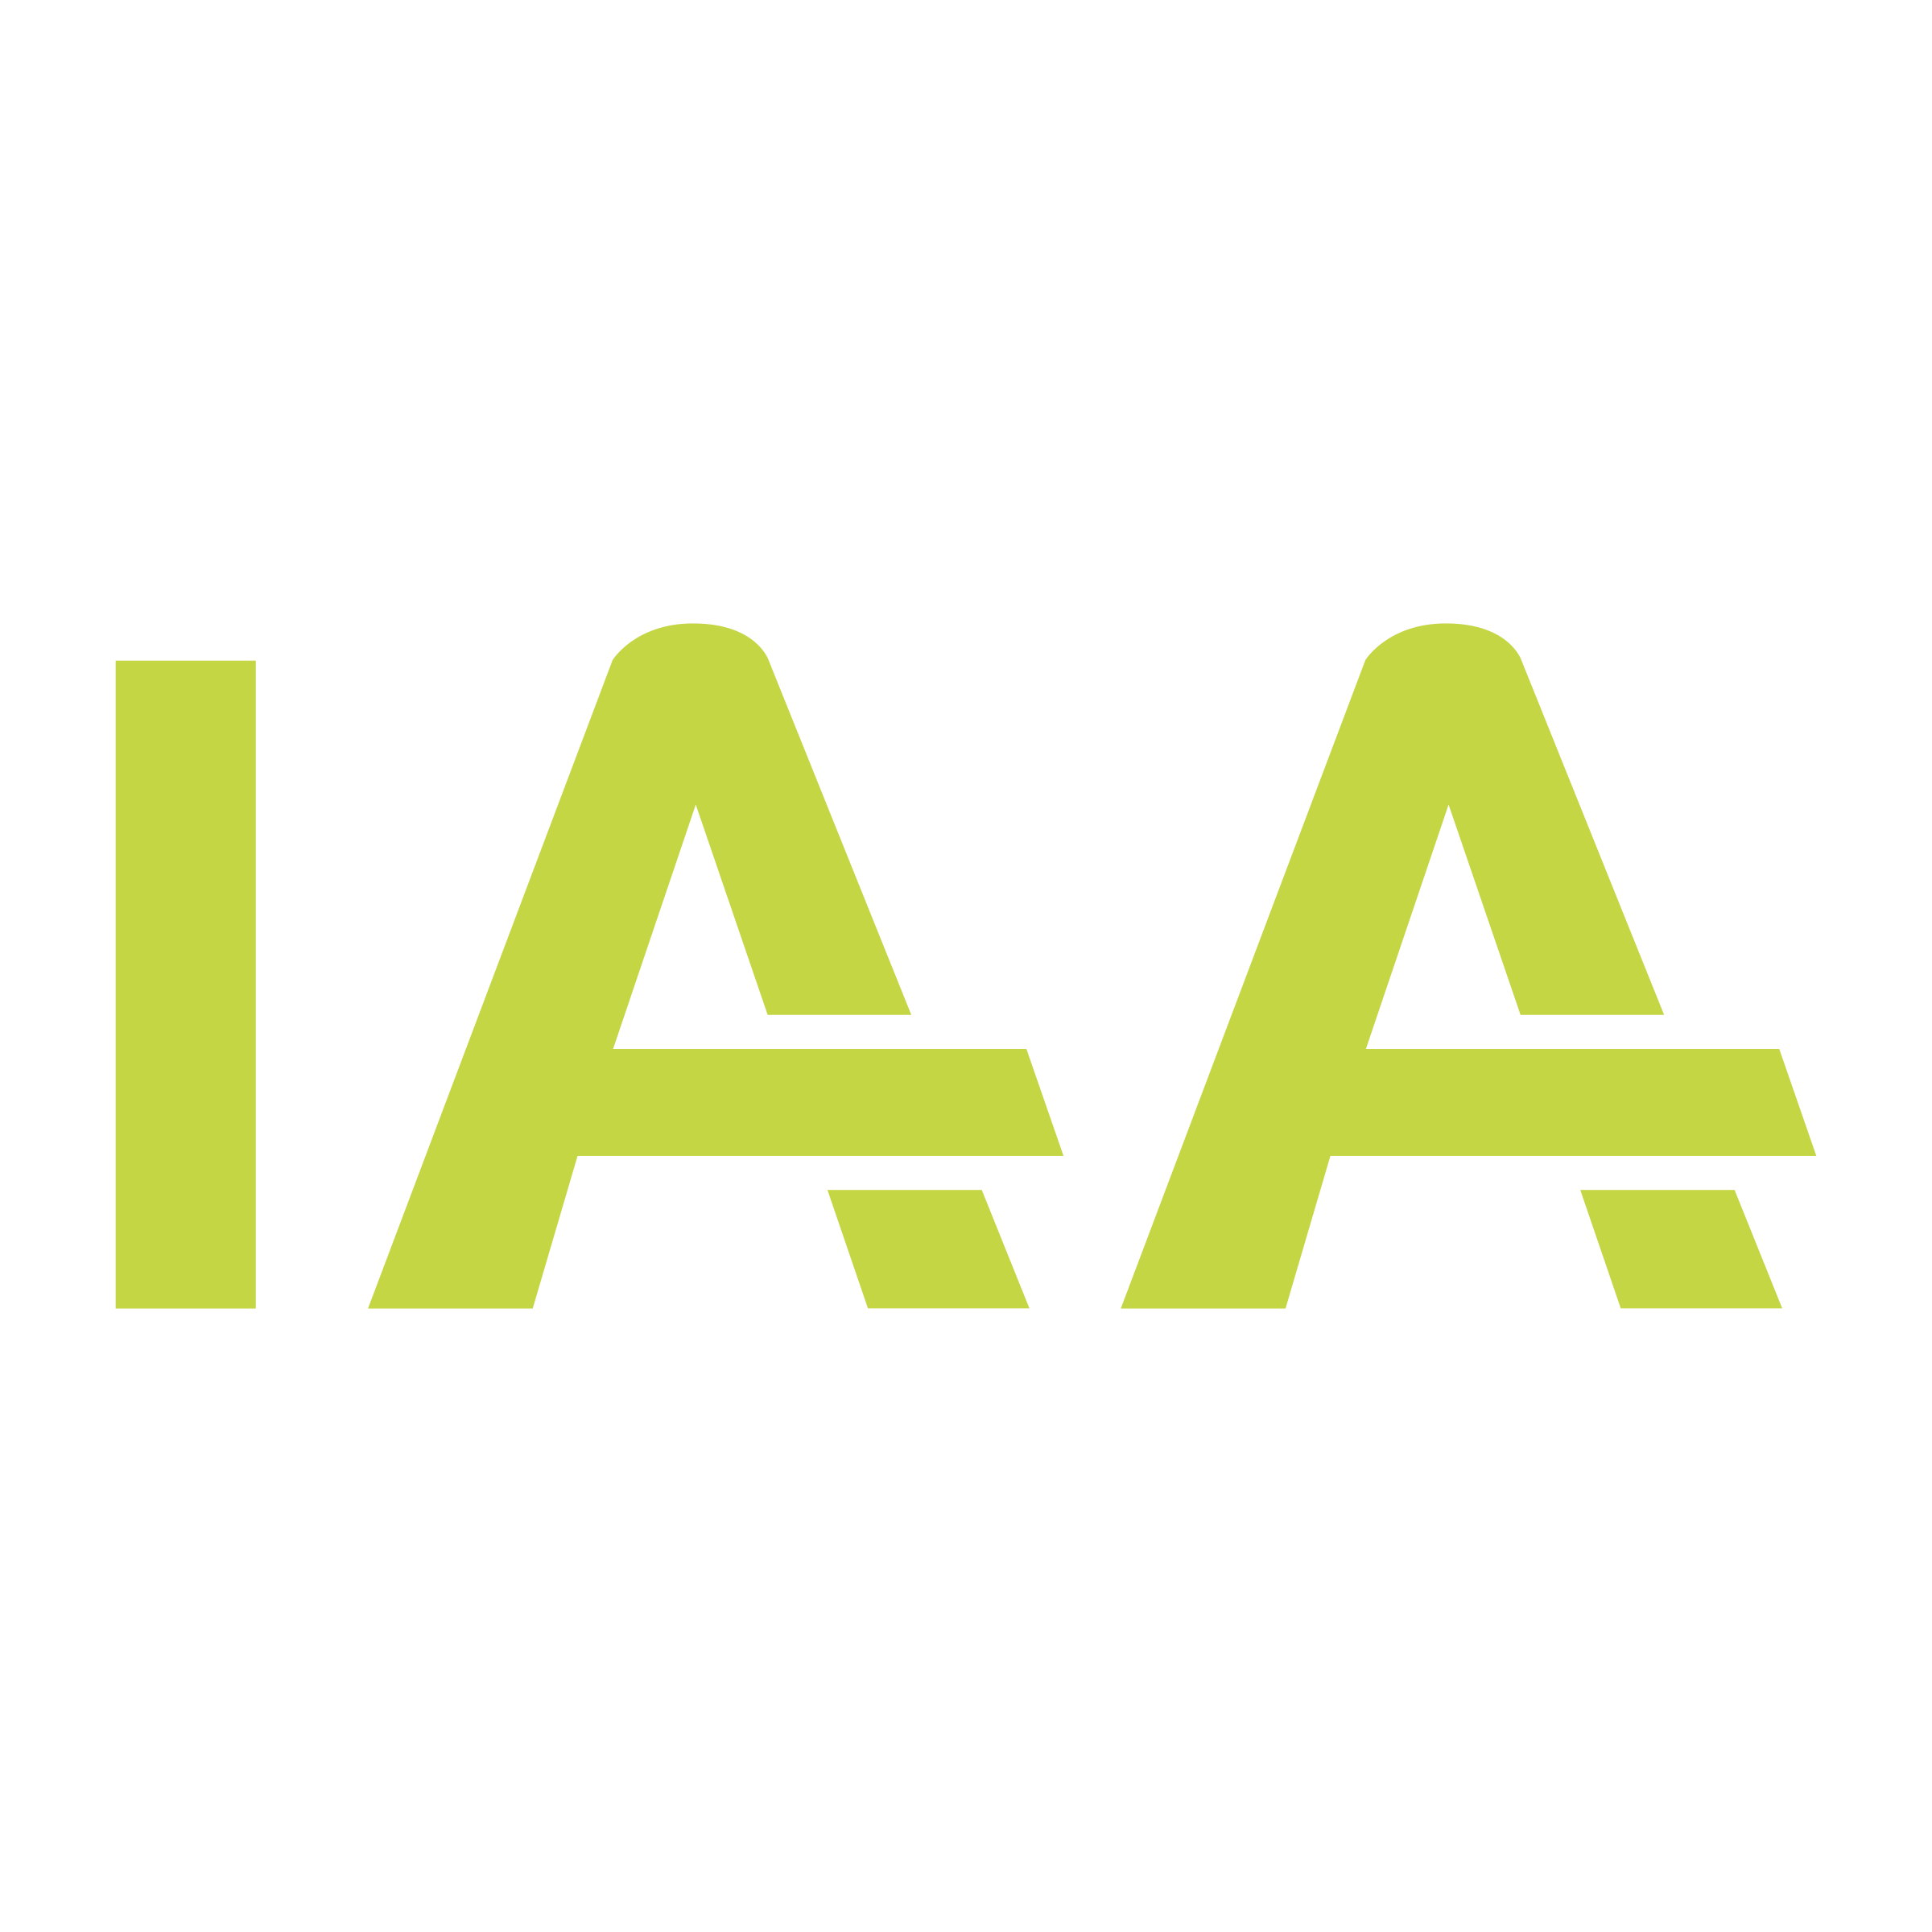 IAA Logo - IAA Logo PNG Transparent & SVG Vector